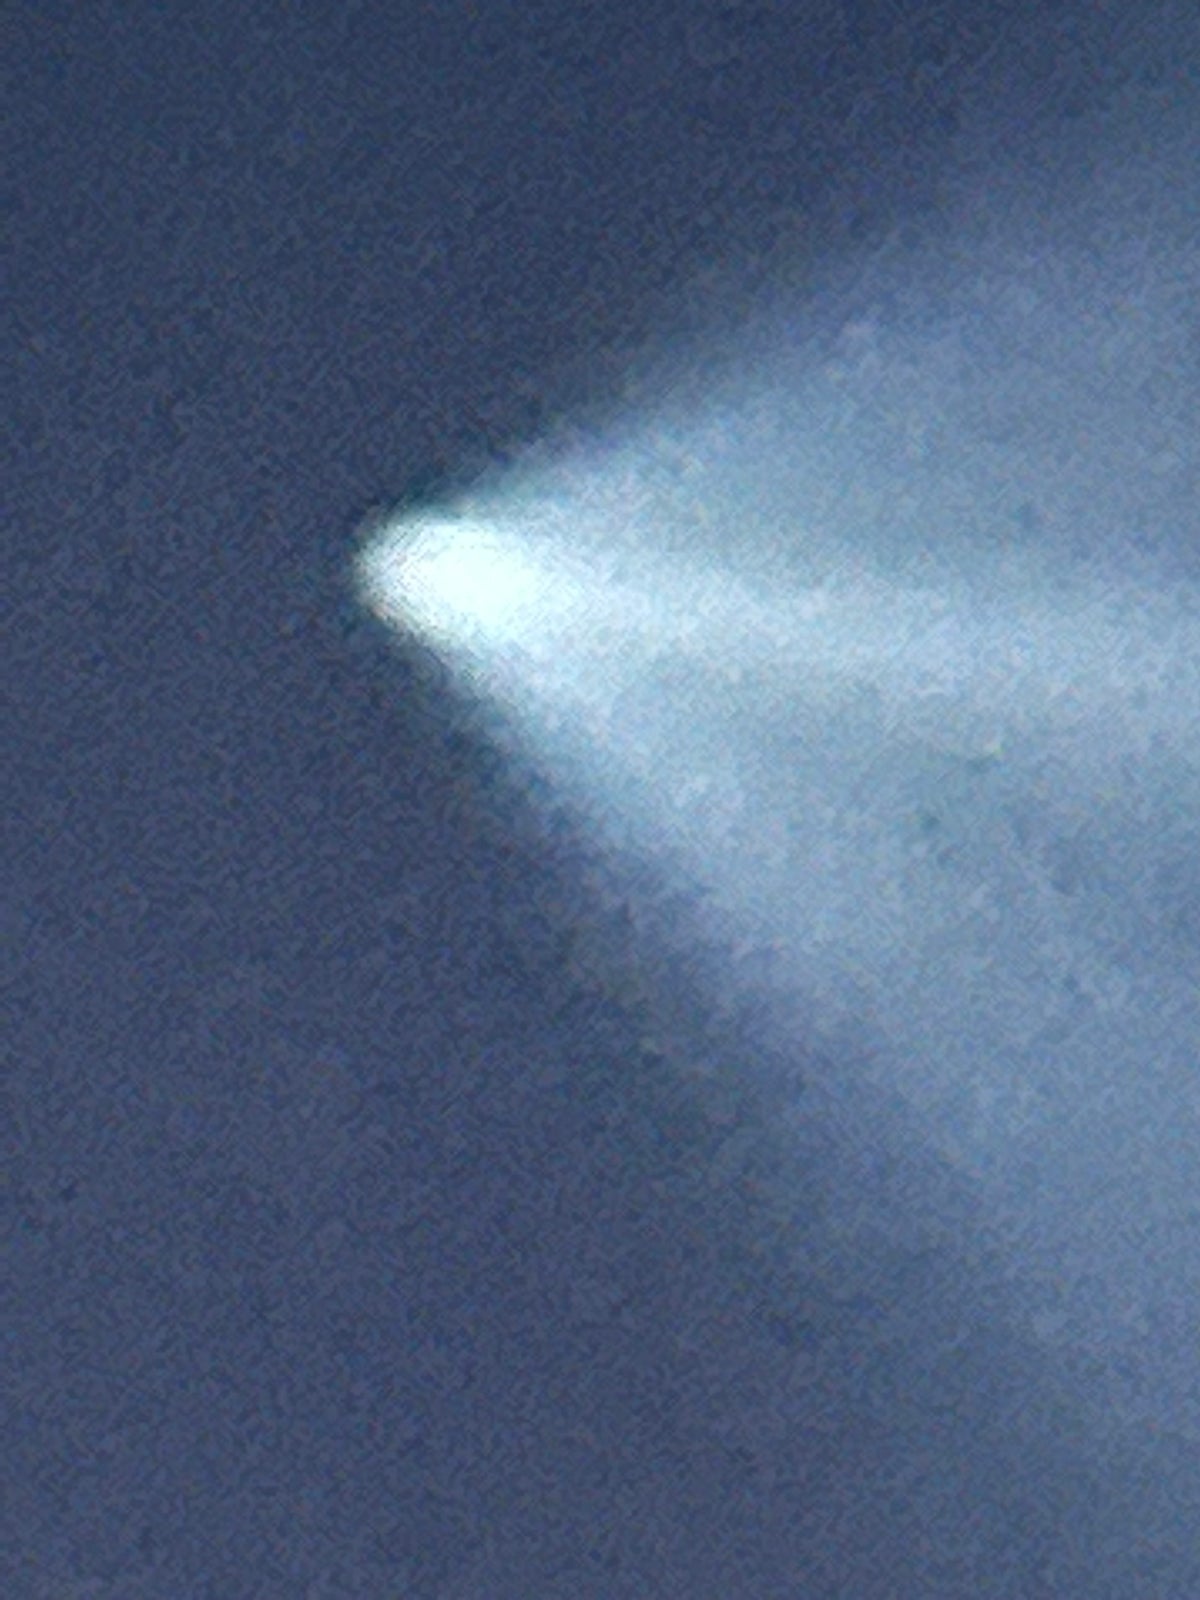 أثر بخار صاروخ سبيس إكس فالكون 9 فوق مارلبورو.  الصورة من فيرجينيا كلاين المشاهد نيوز 12 نيو جيرسي.